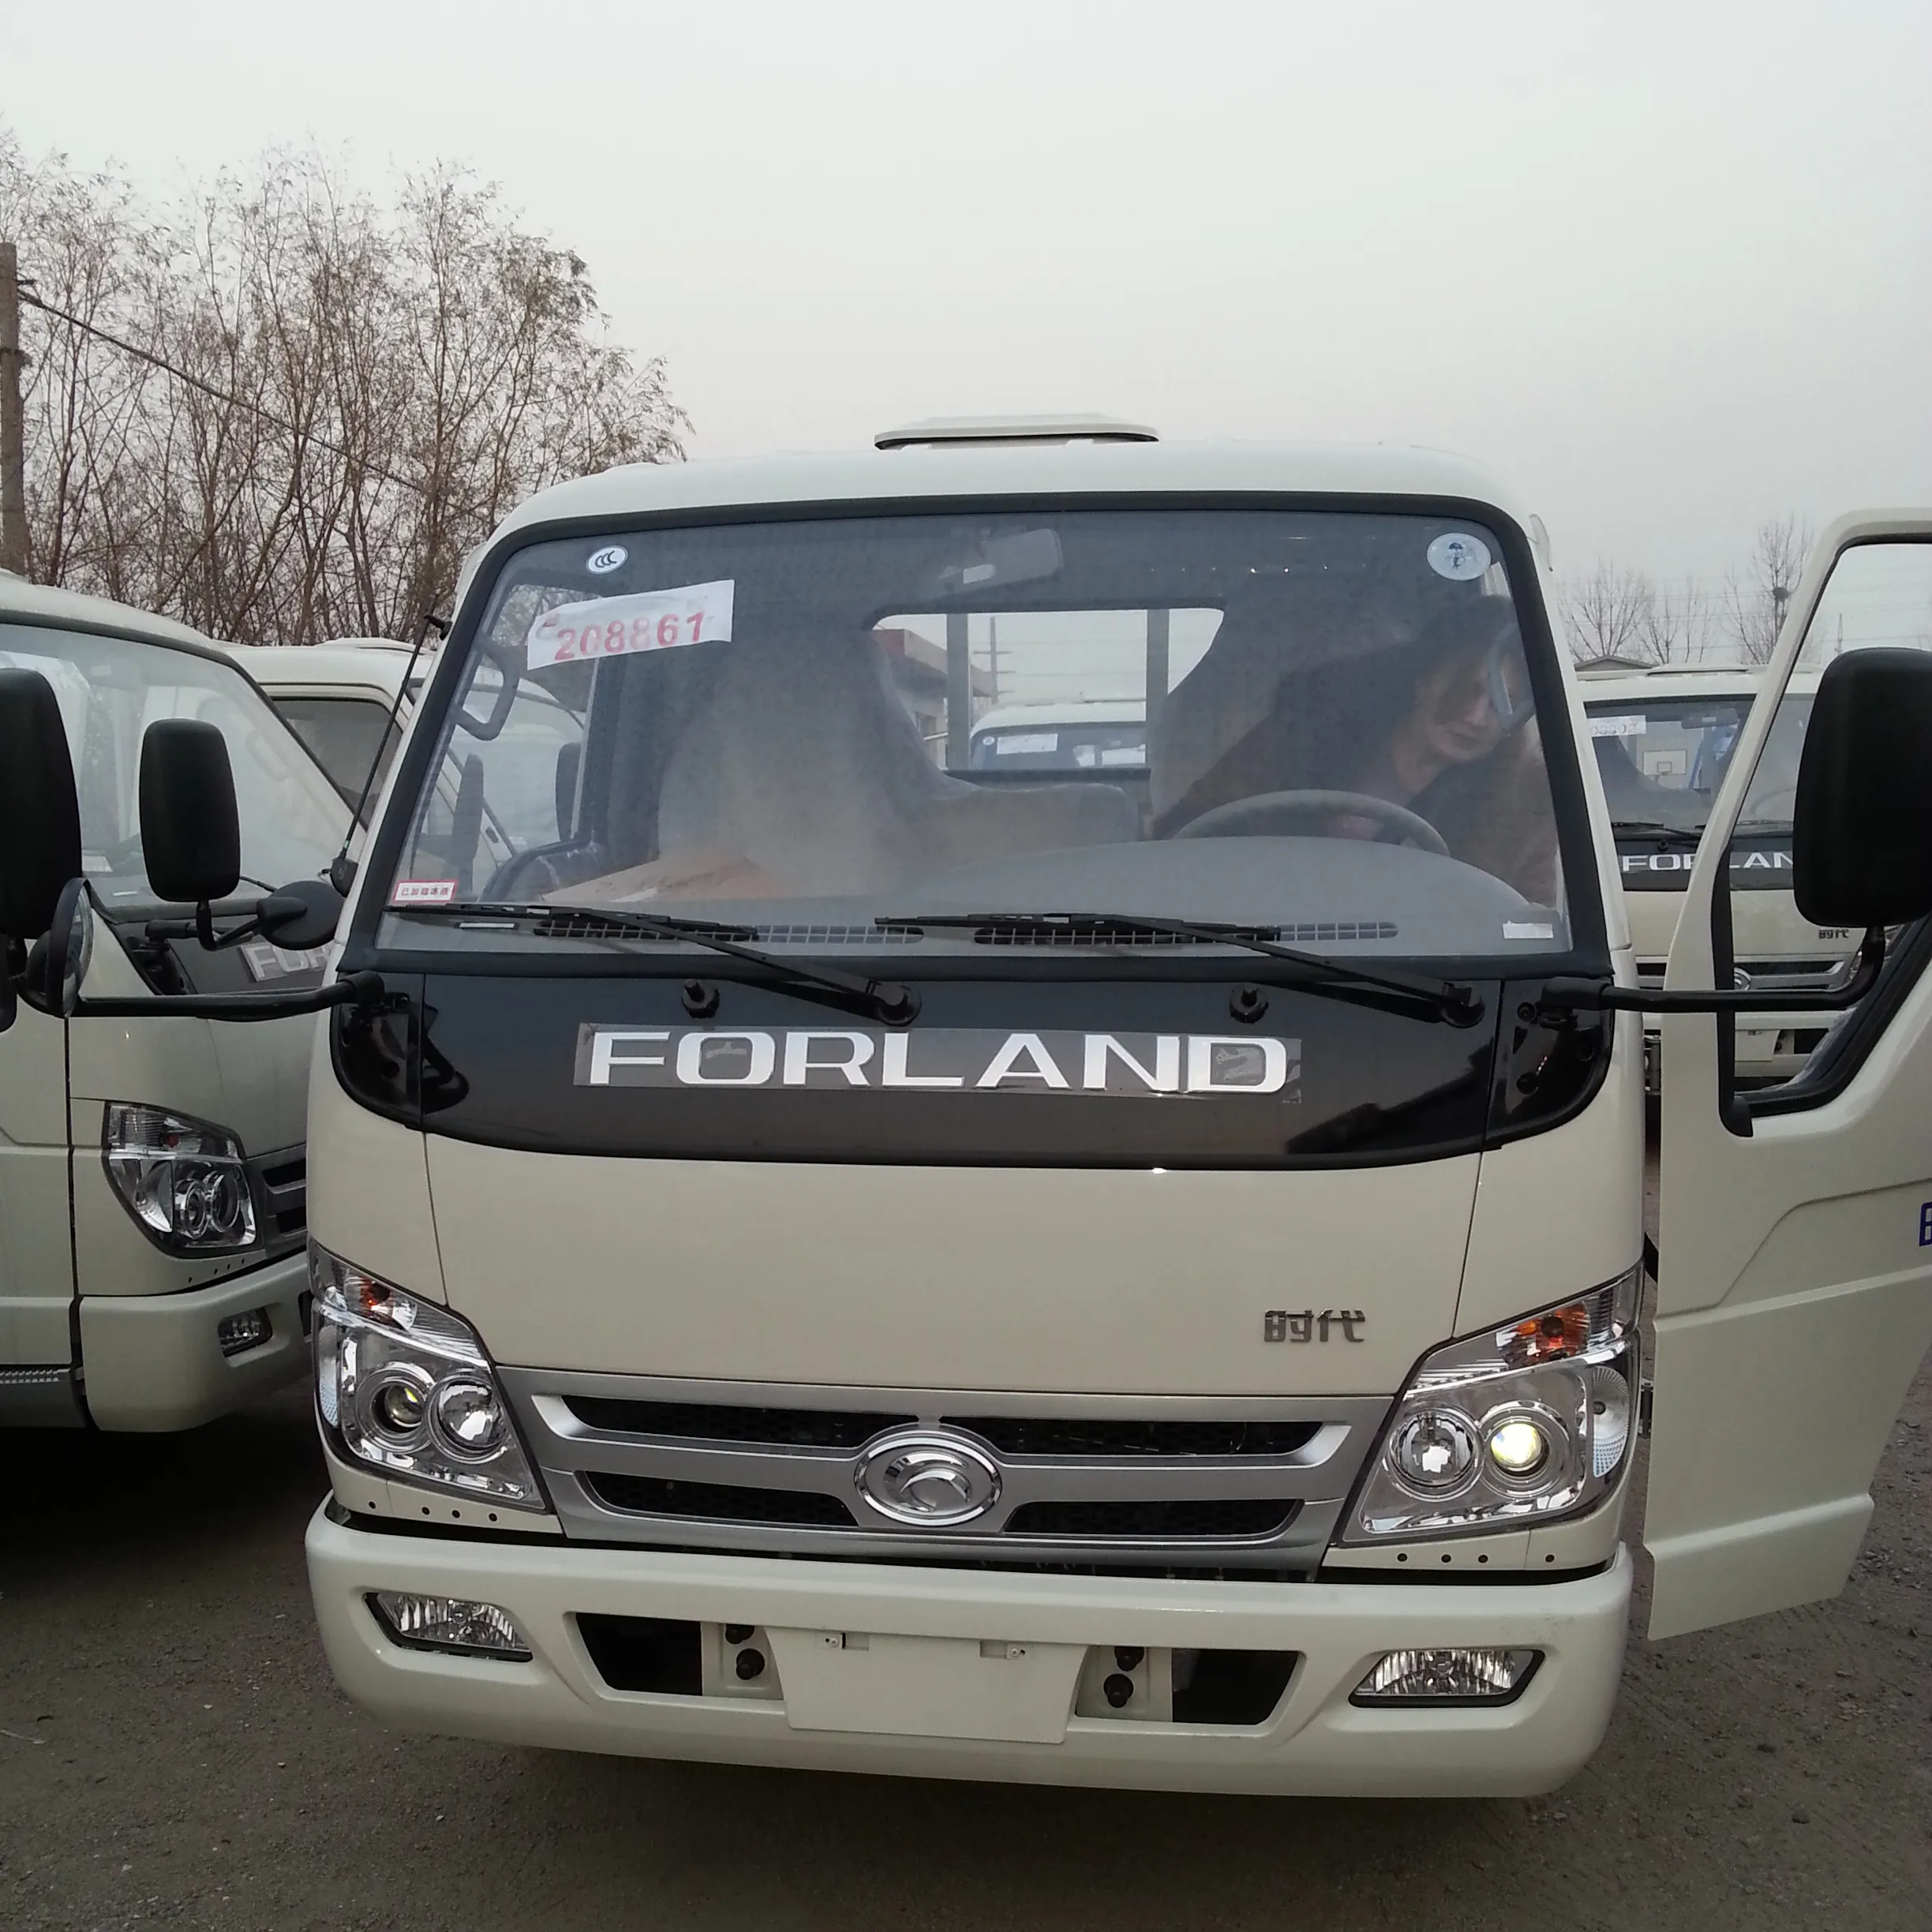 Грузовик марки Foton Forland 2021 года, 4*2 колесный фургон, вес 2-4 тонны, Малый грузовик, хорошая цена, легкий грузовик